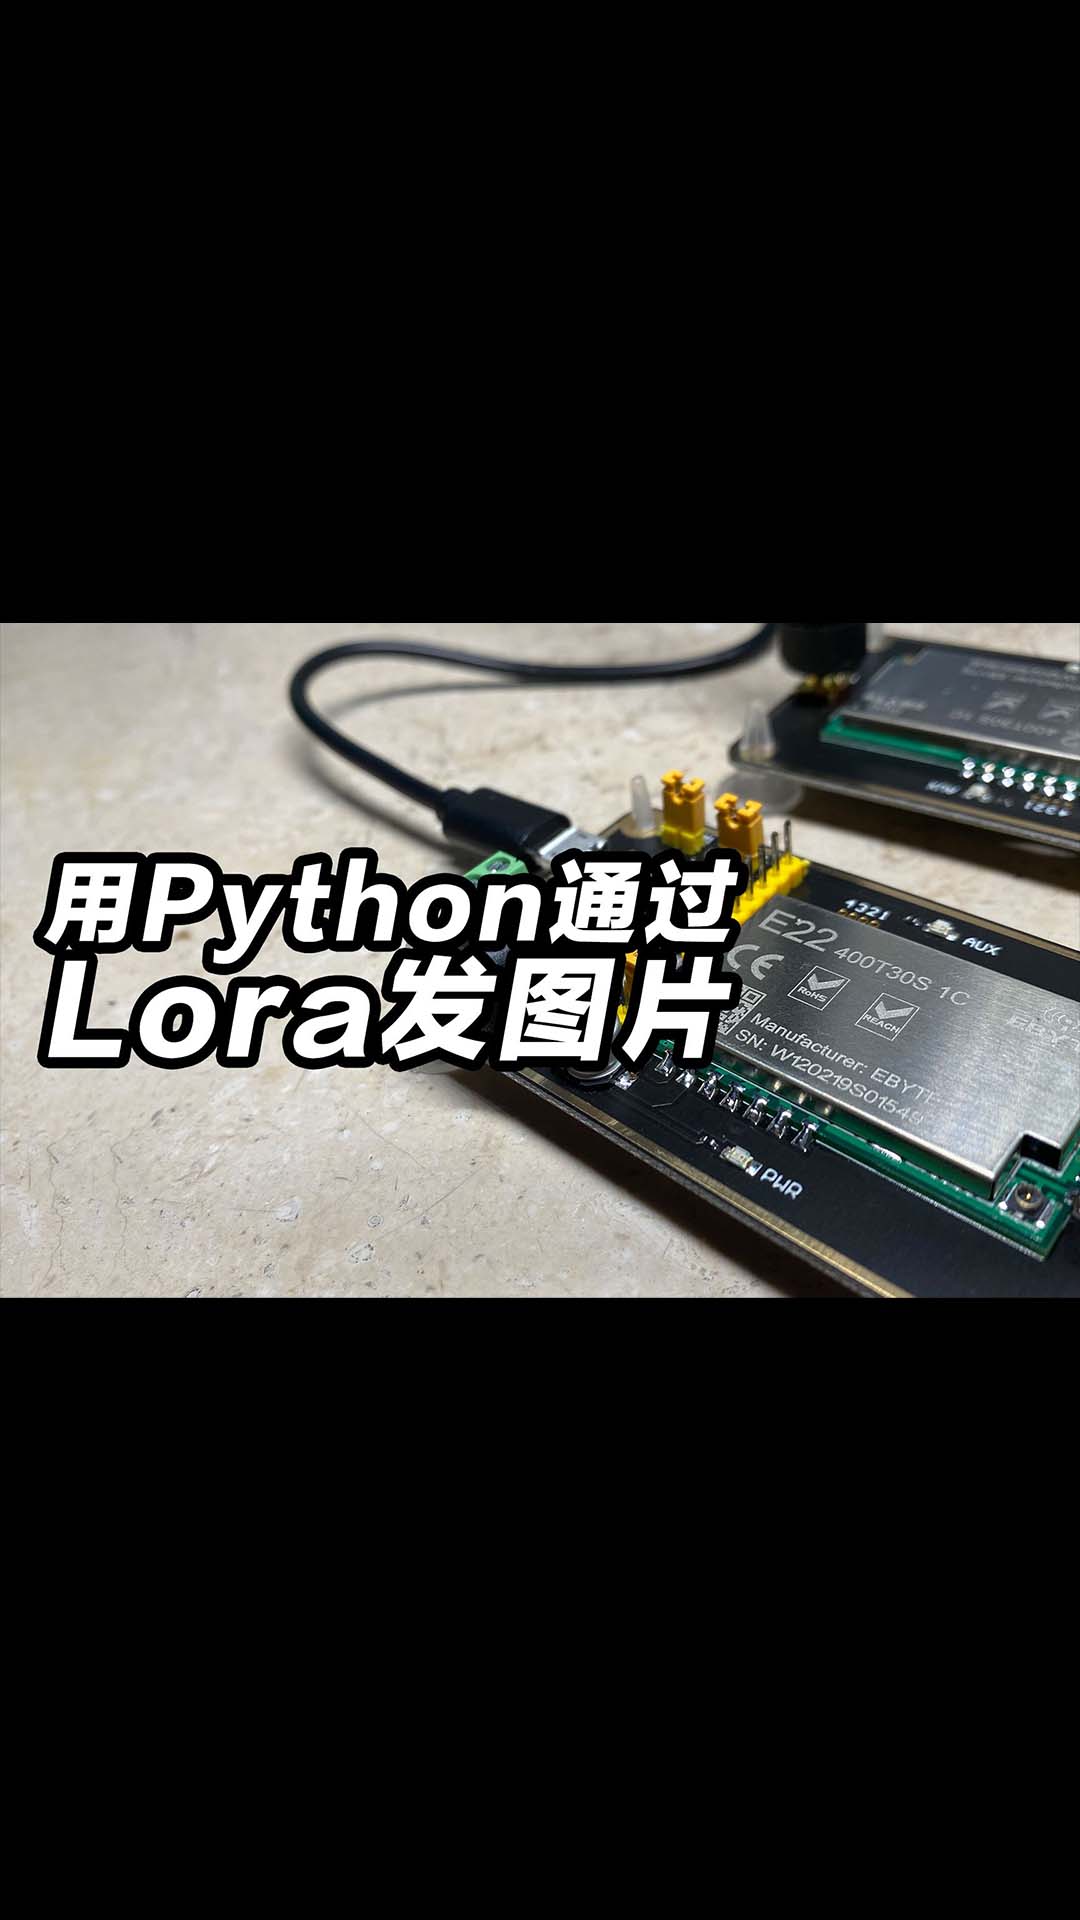 【开源】用python通过lora发送图片的试验，结果和预料中一样。